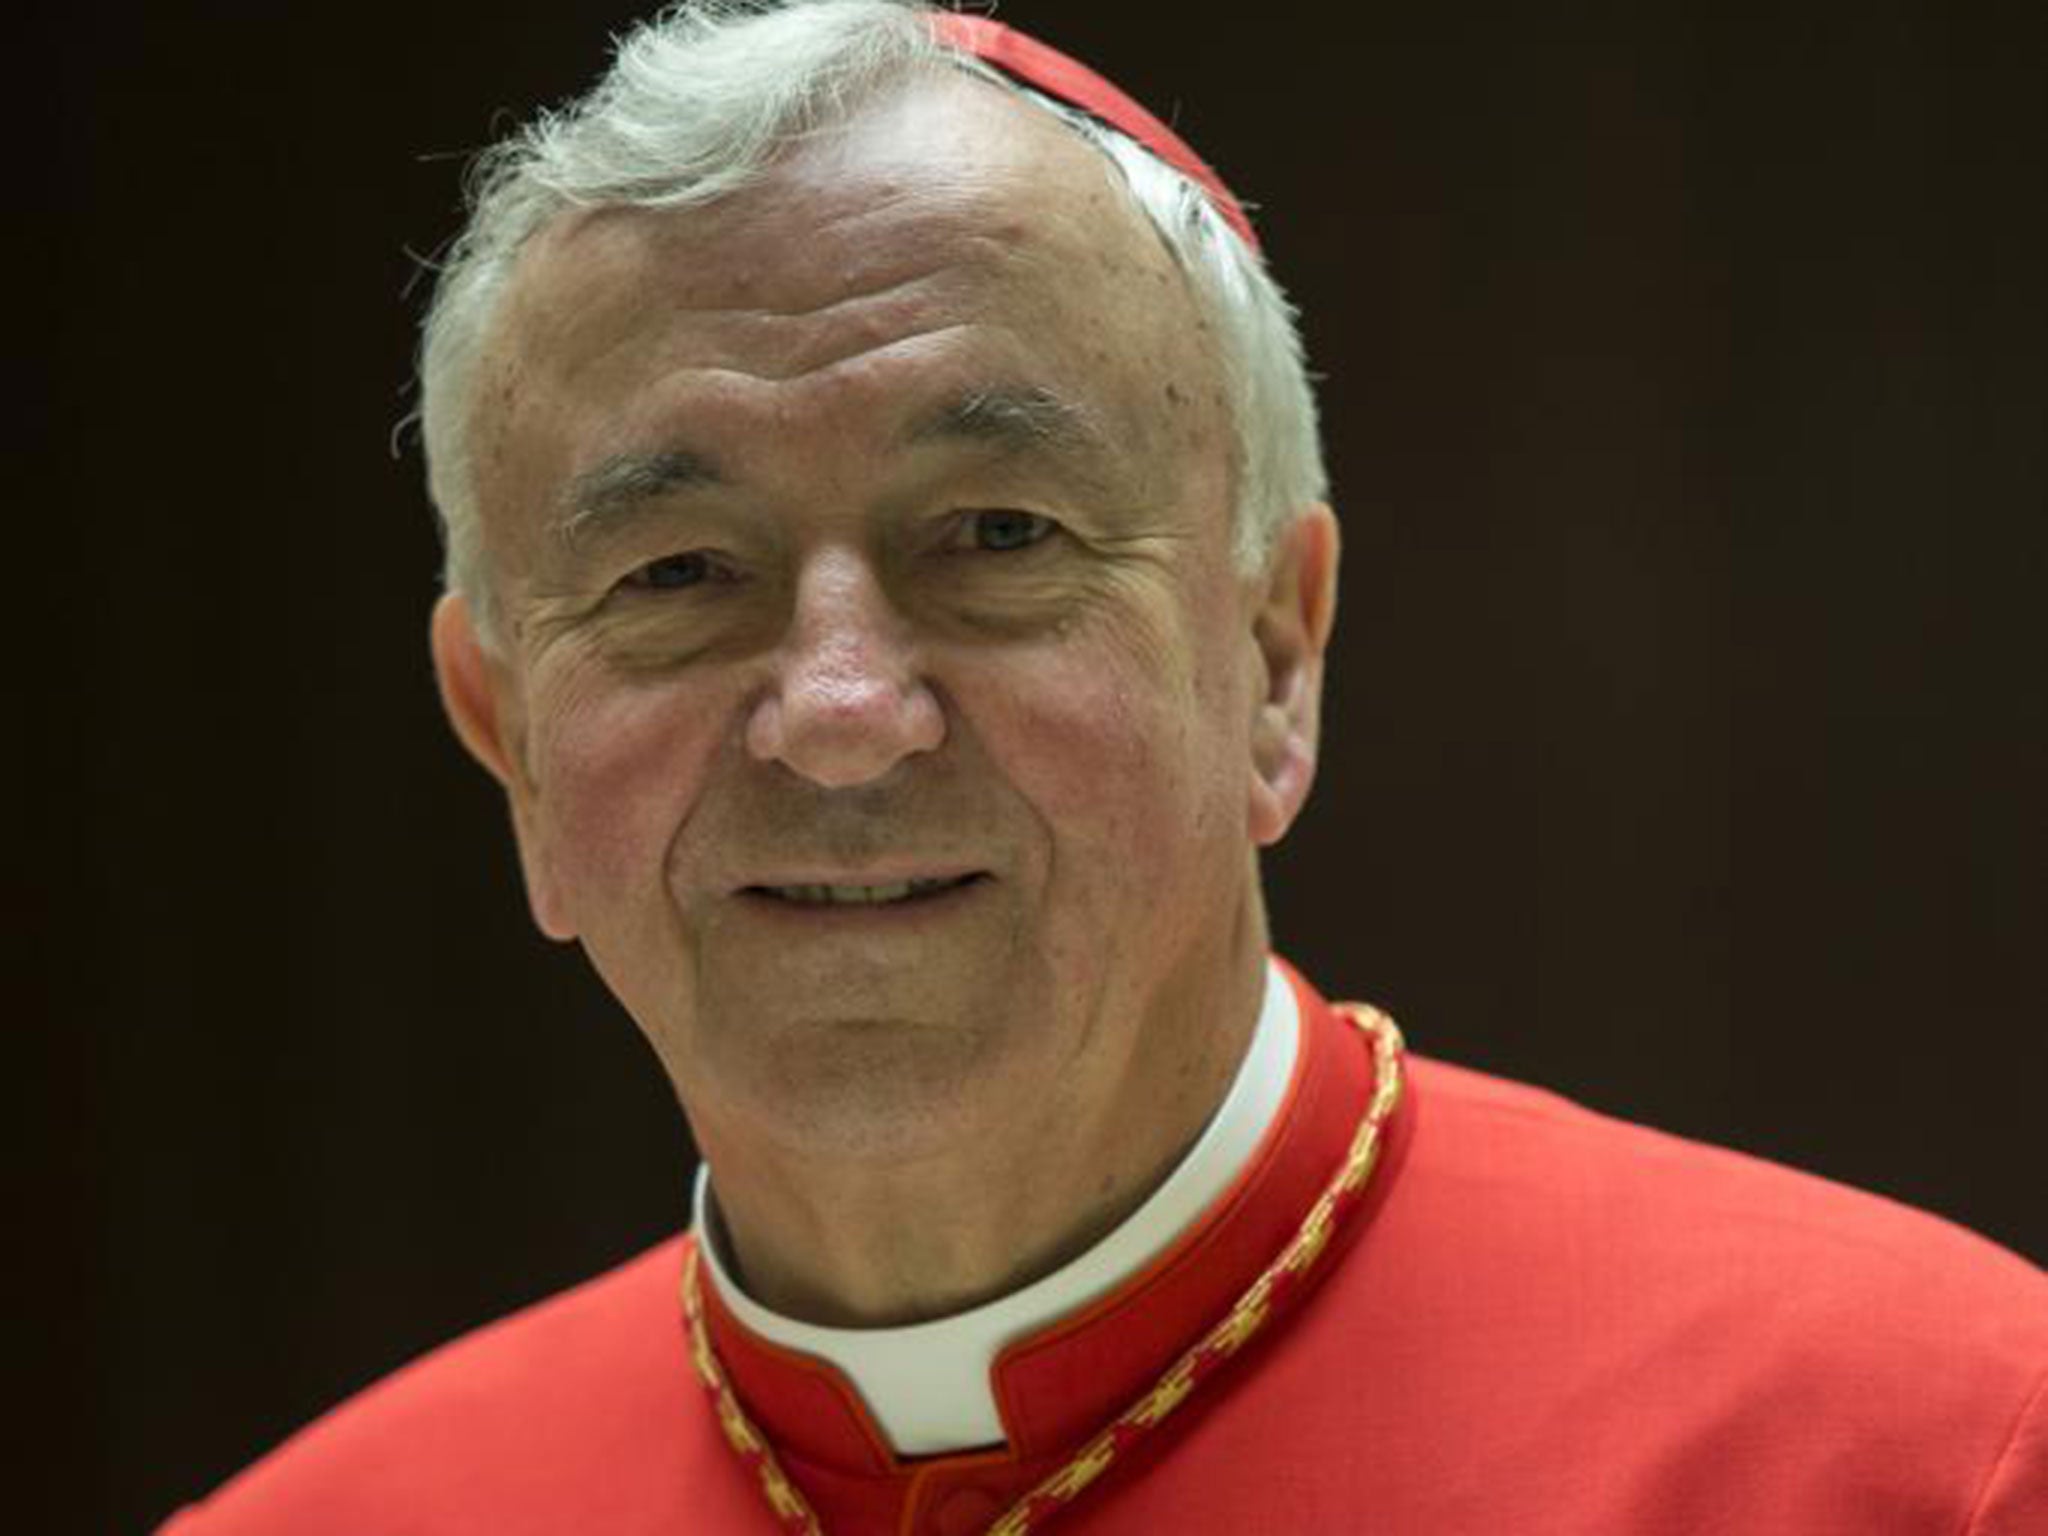 Cardinal Vincent Nichols said Britain could face more 'complex problems' if it left the European Union